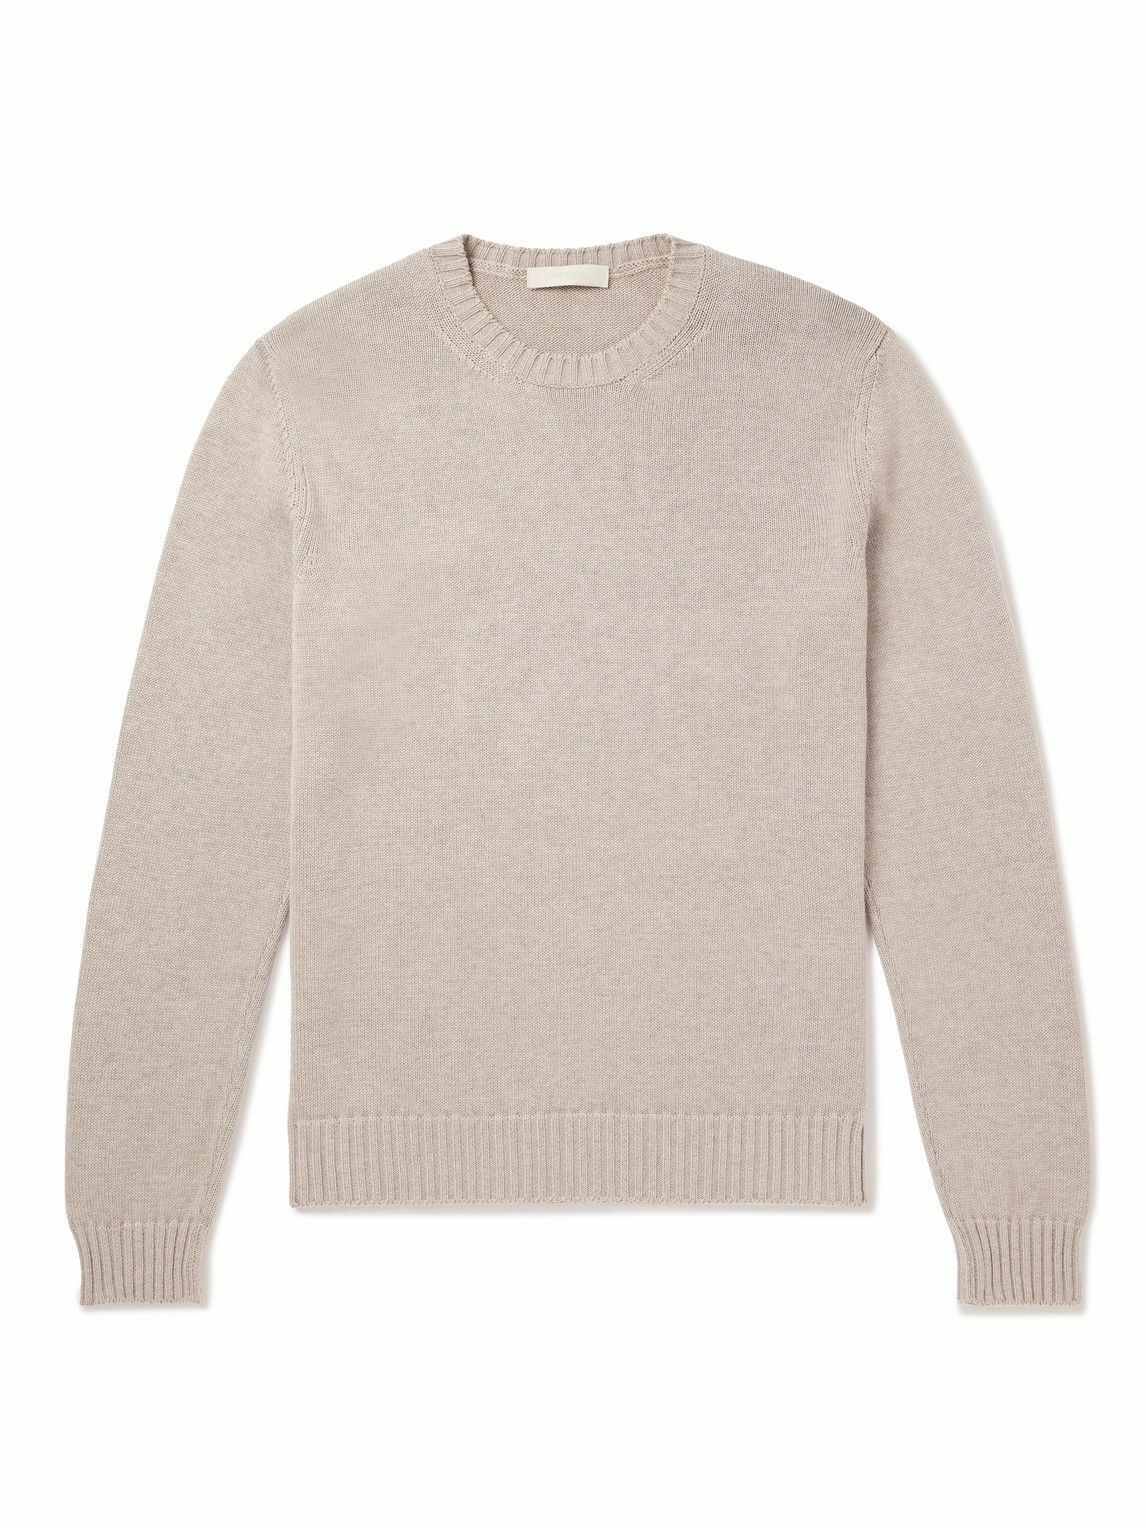 Saman Amel - Slim-Fit Cotton Sweater - Neutrals